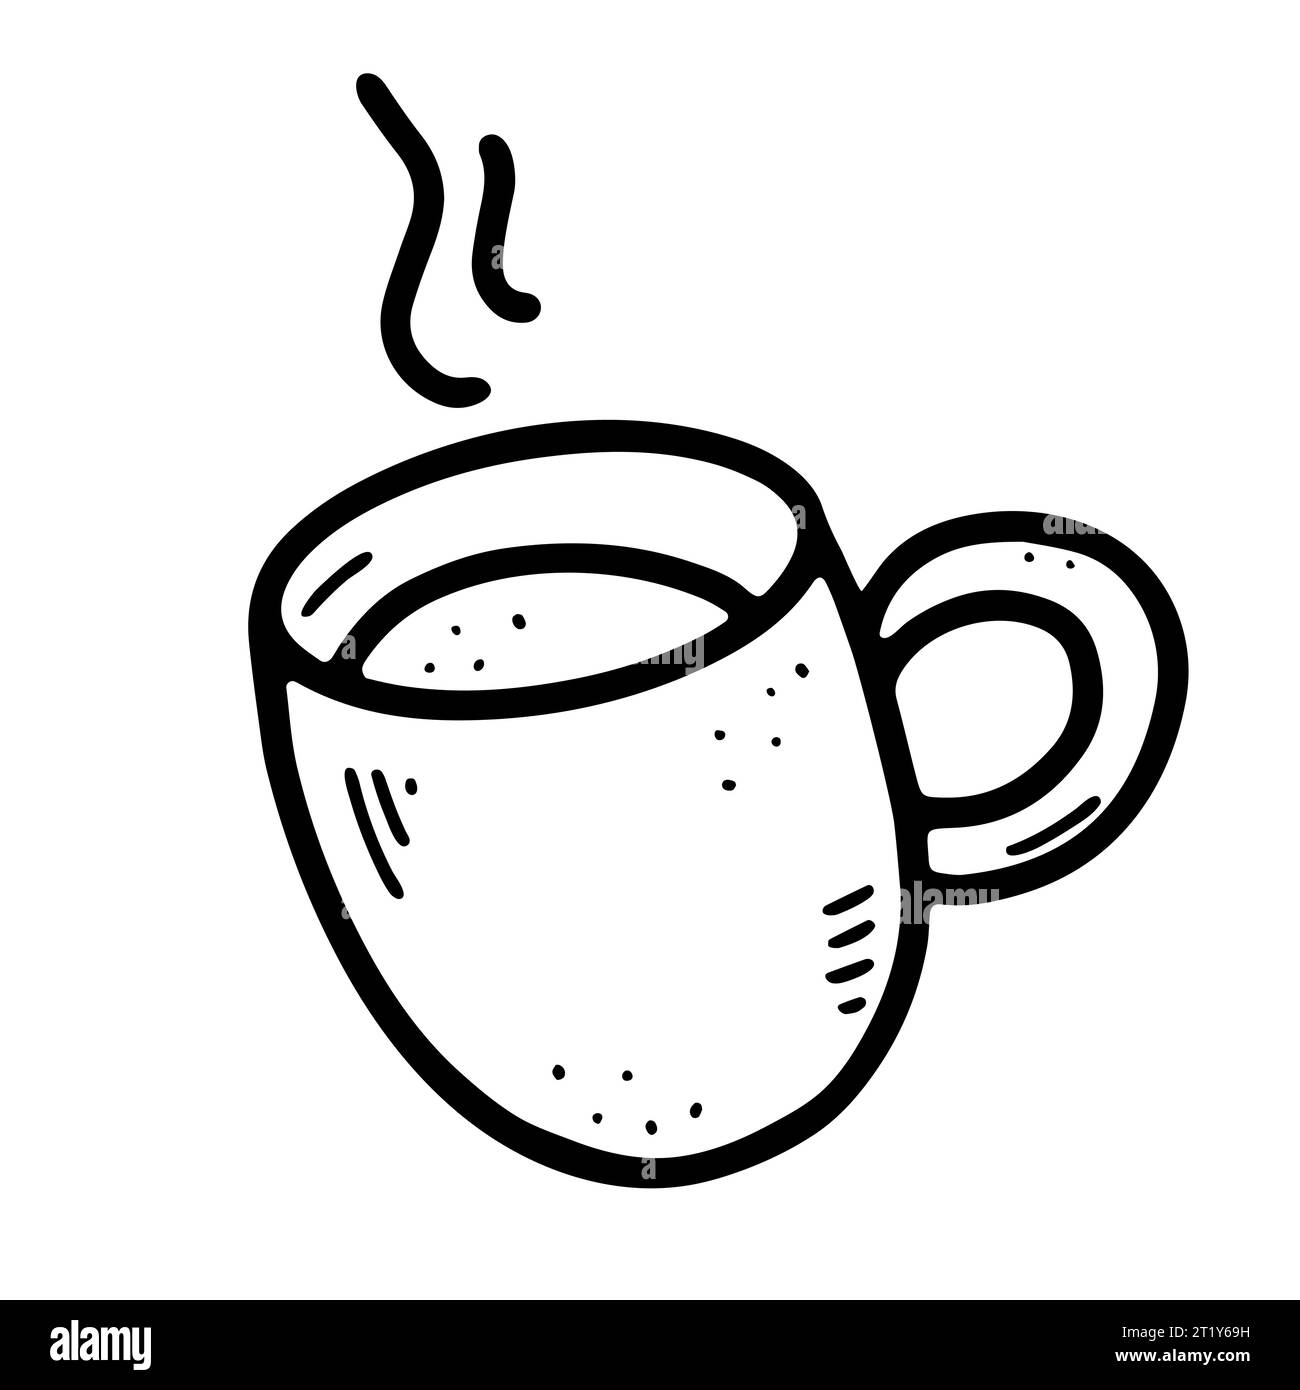 Kritzele eine Kaffeetasse. Niedliches heißes Getränk isoliert auf weißem Hintergrund. Outline Tea, Latte, Cappuccino, Americano Becher mit Griff, Dampf. Vektorgeschirr krank Stock Vektor